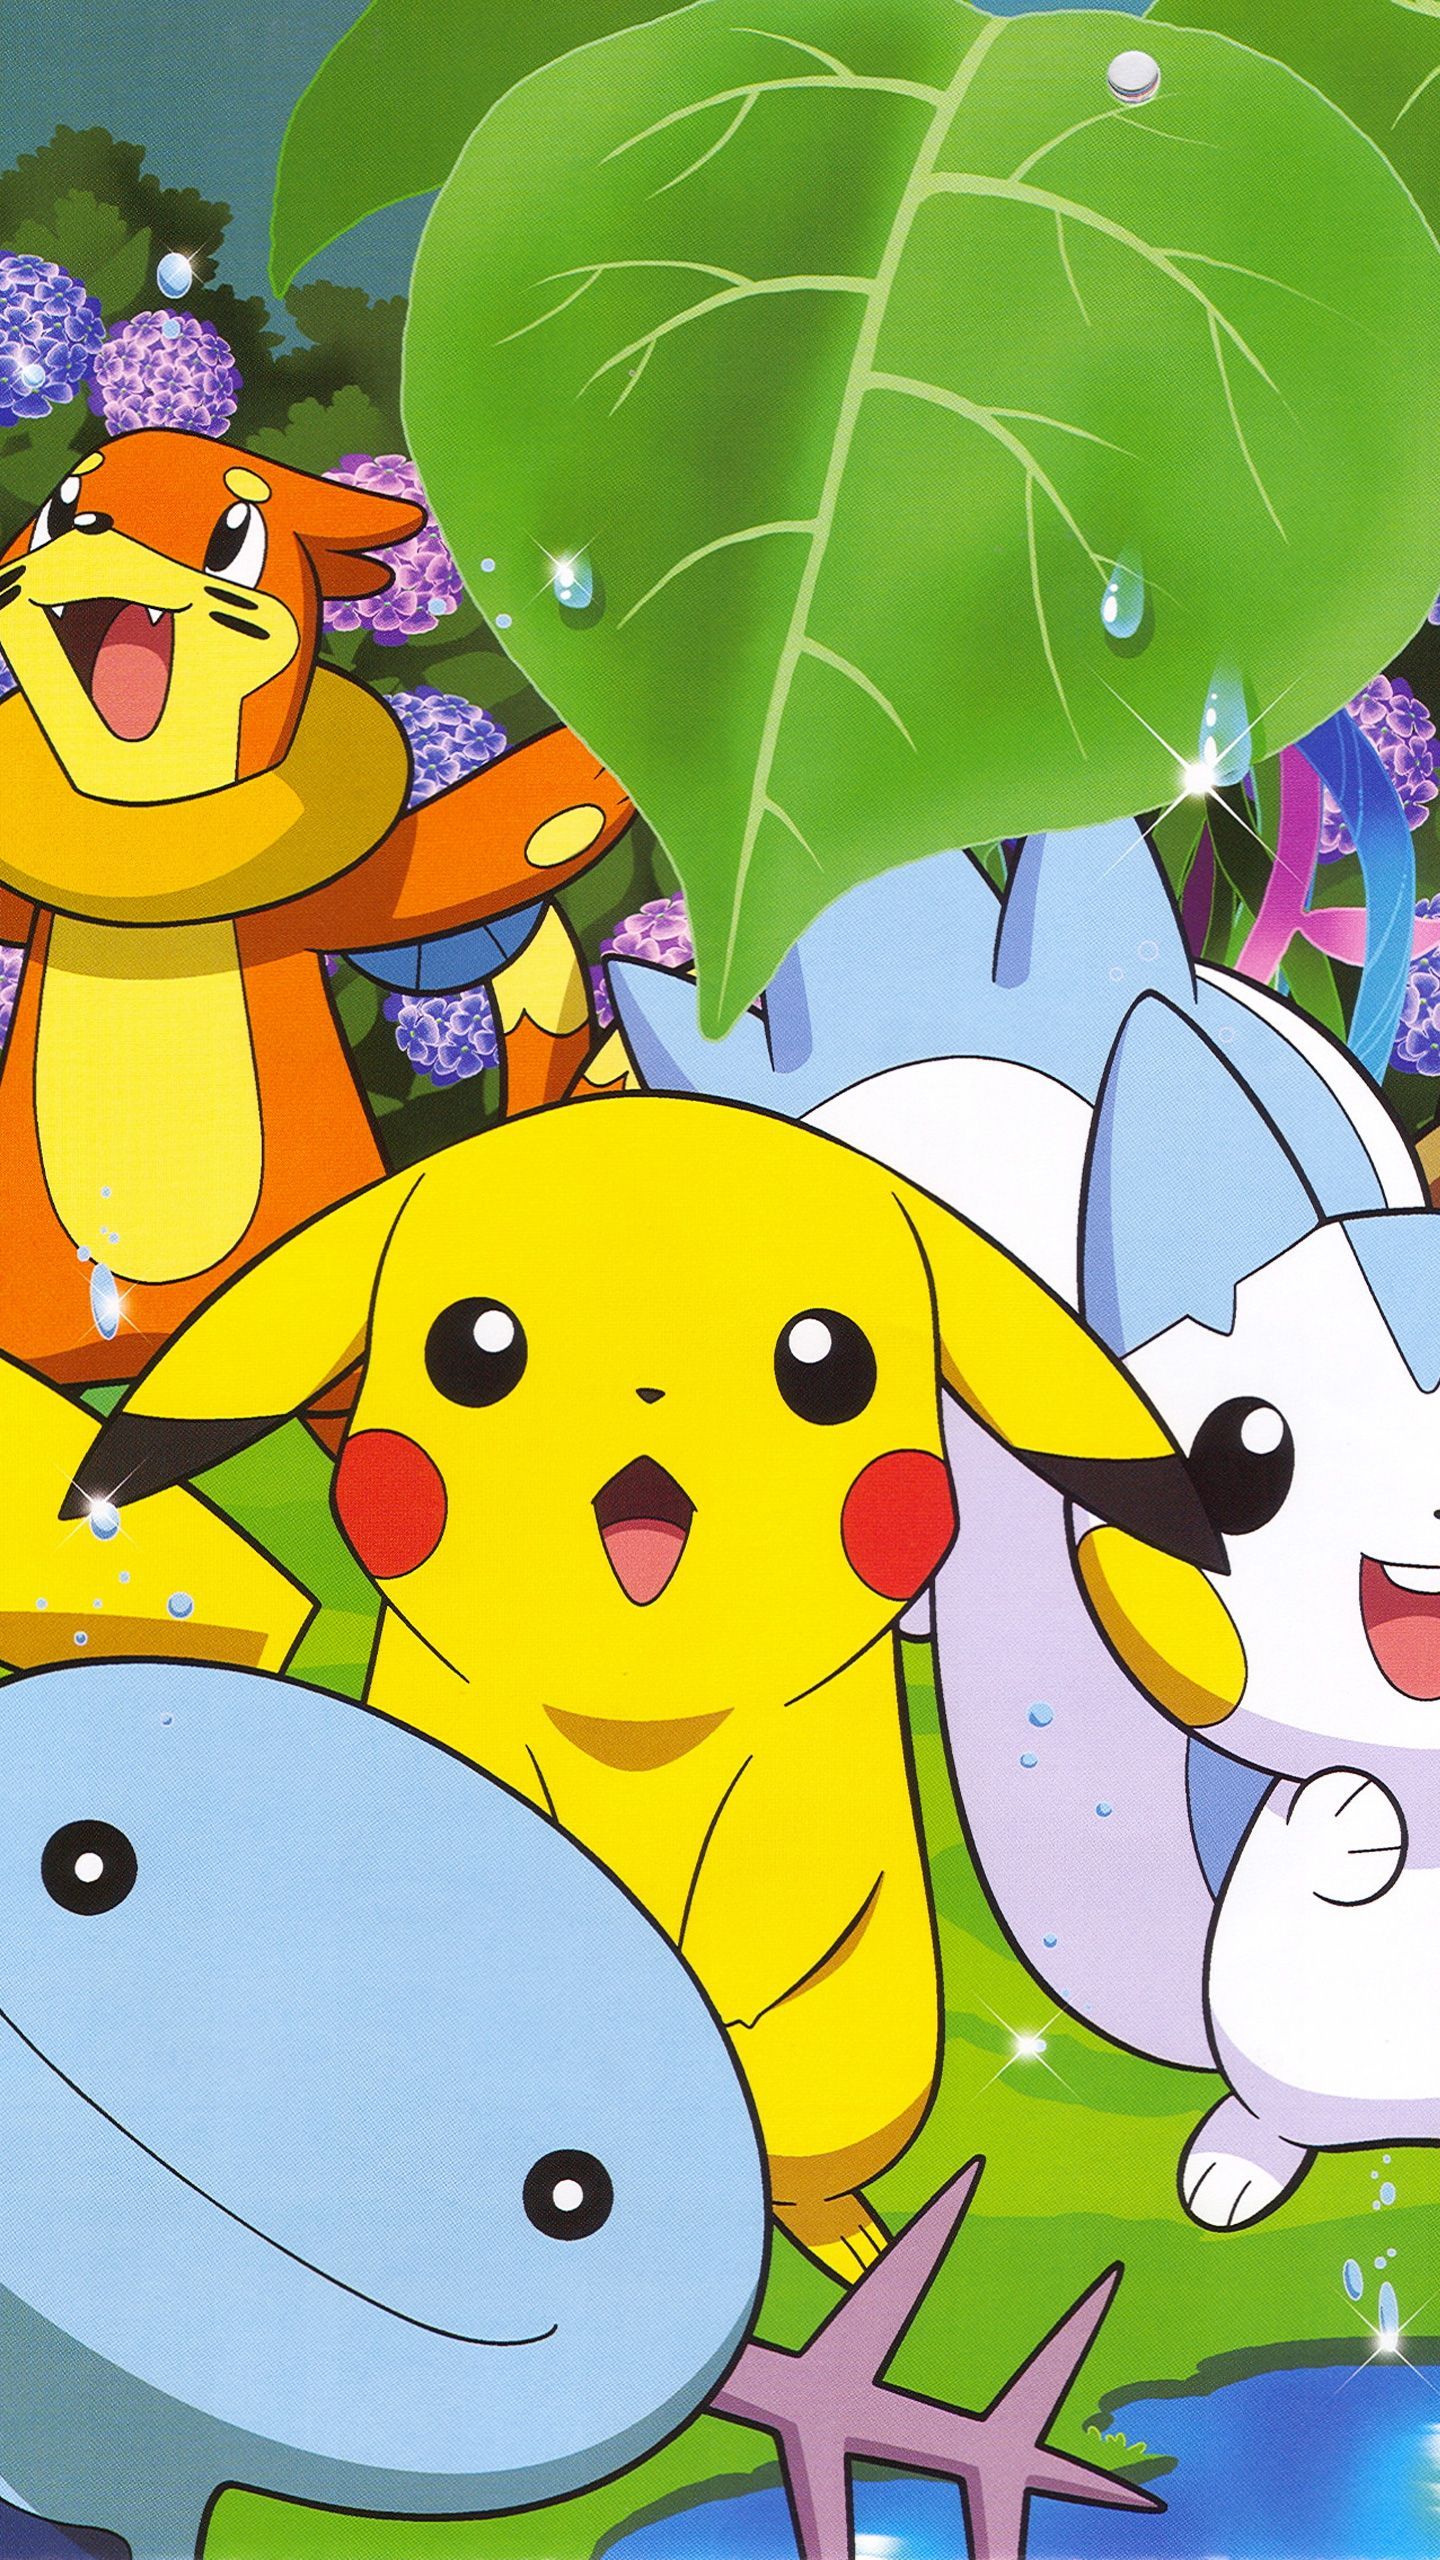 Fondos de Pantalla de Pokemon para Android e iPhone, Wallpapers Gratis